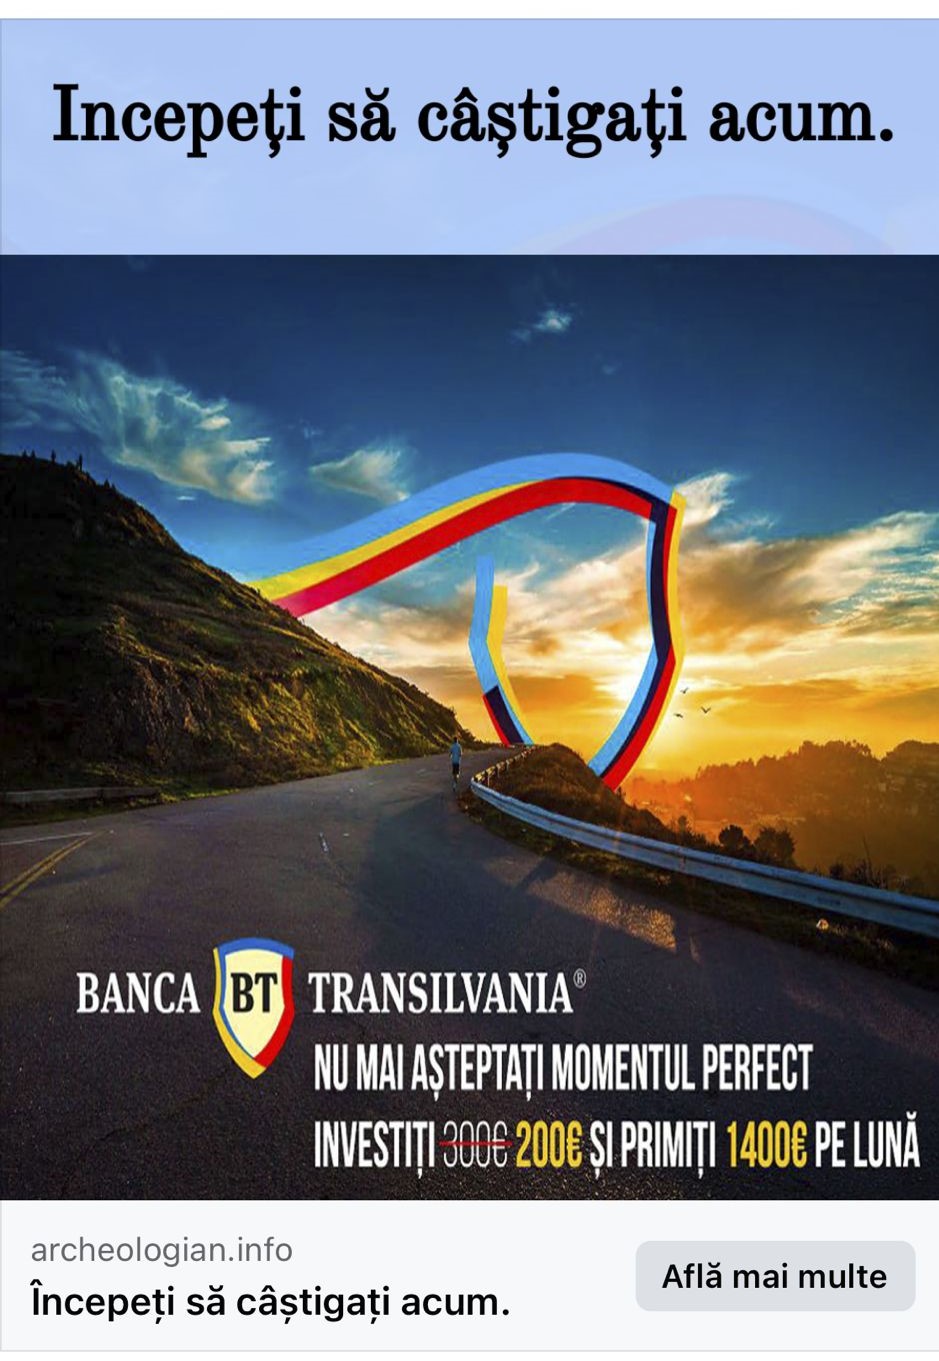 Reclame-false-Facebook-Blog-Banca-Transilvania-4.png